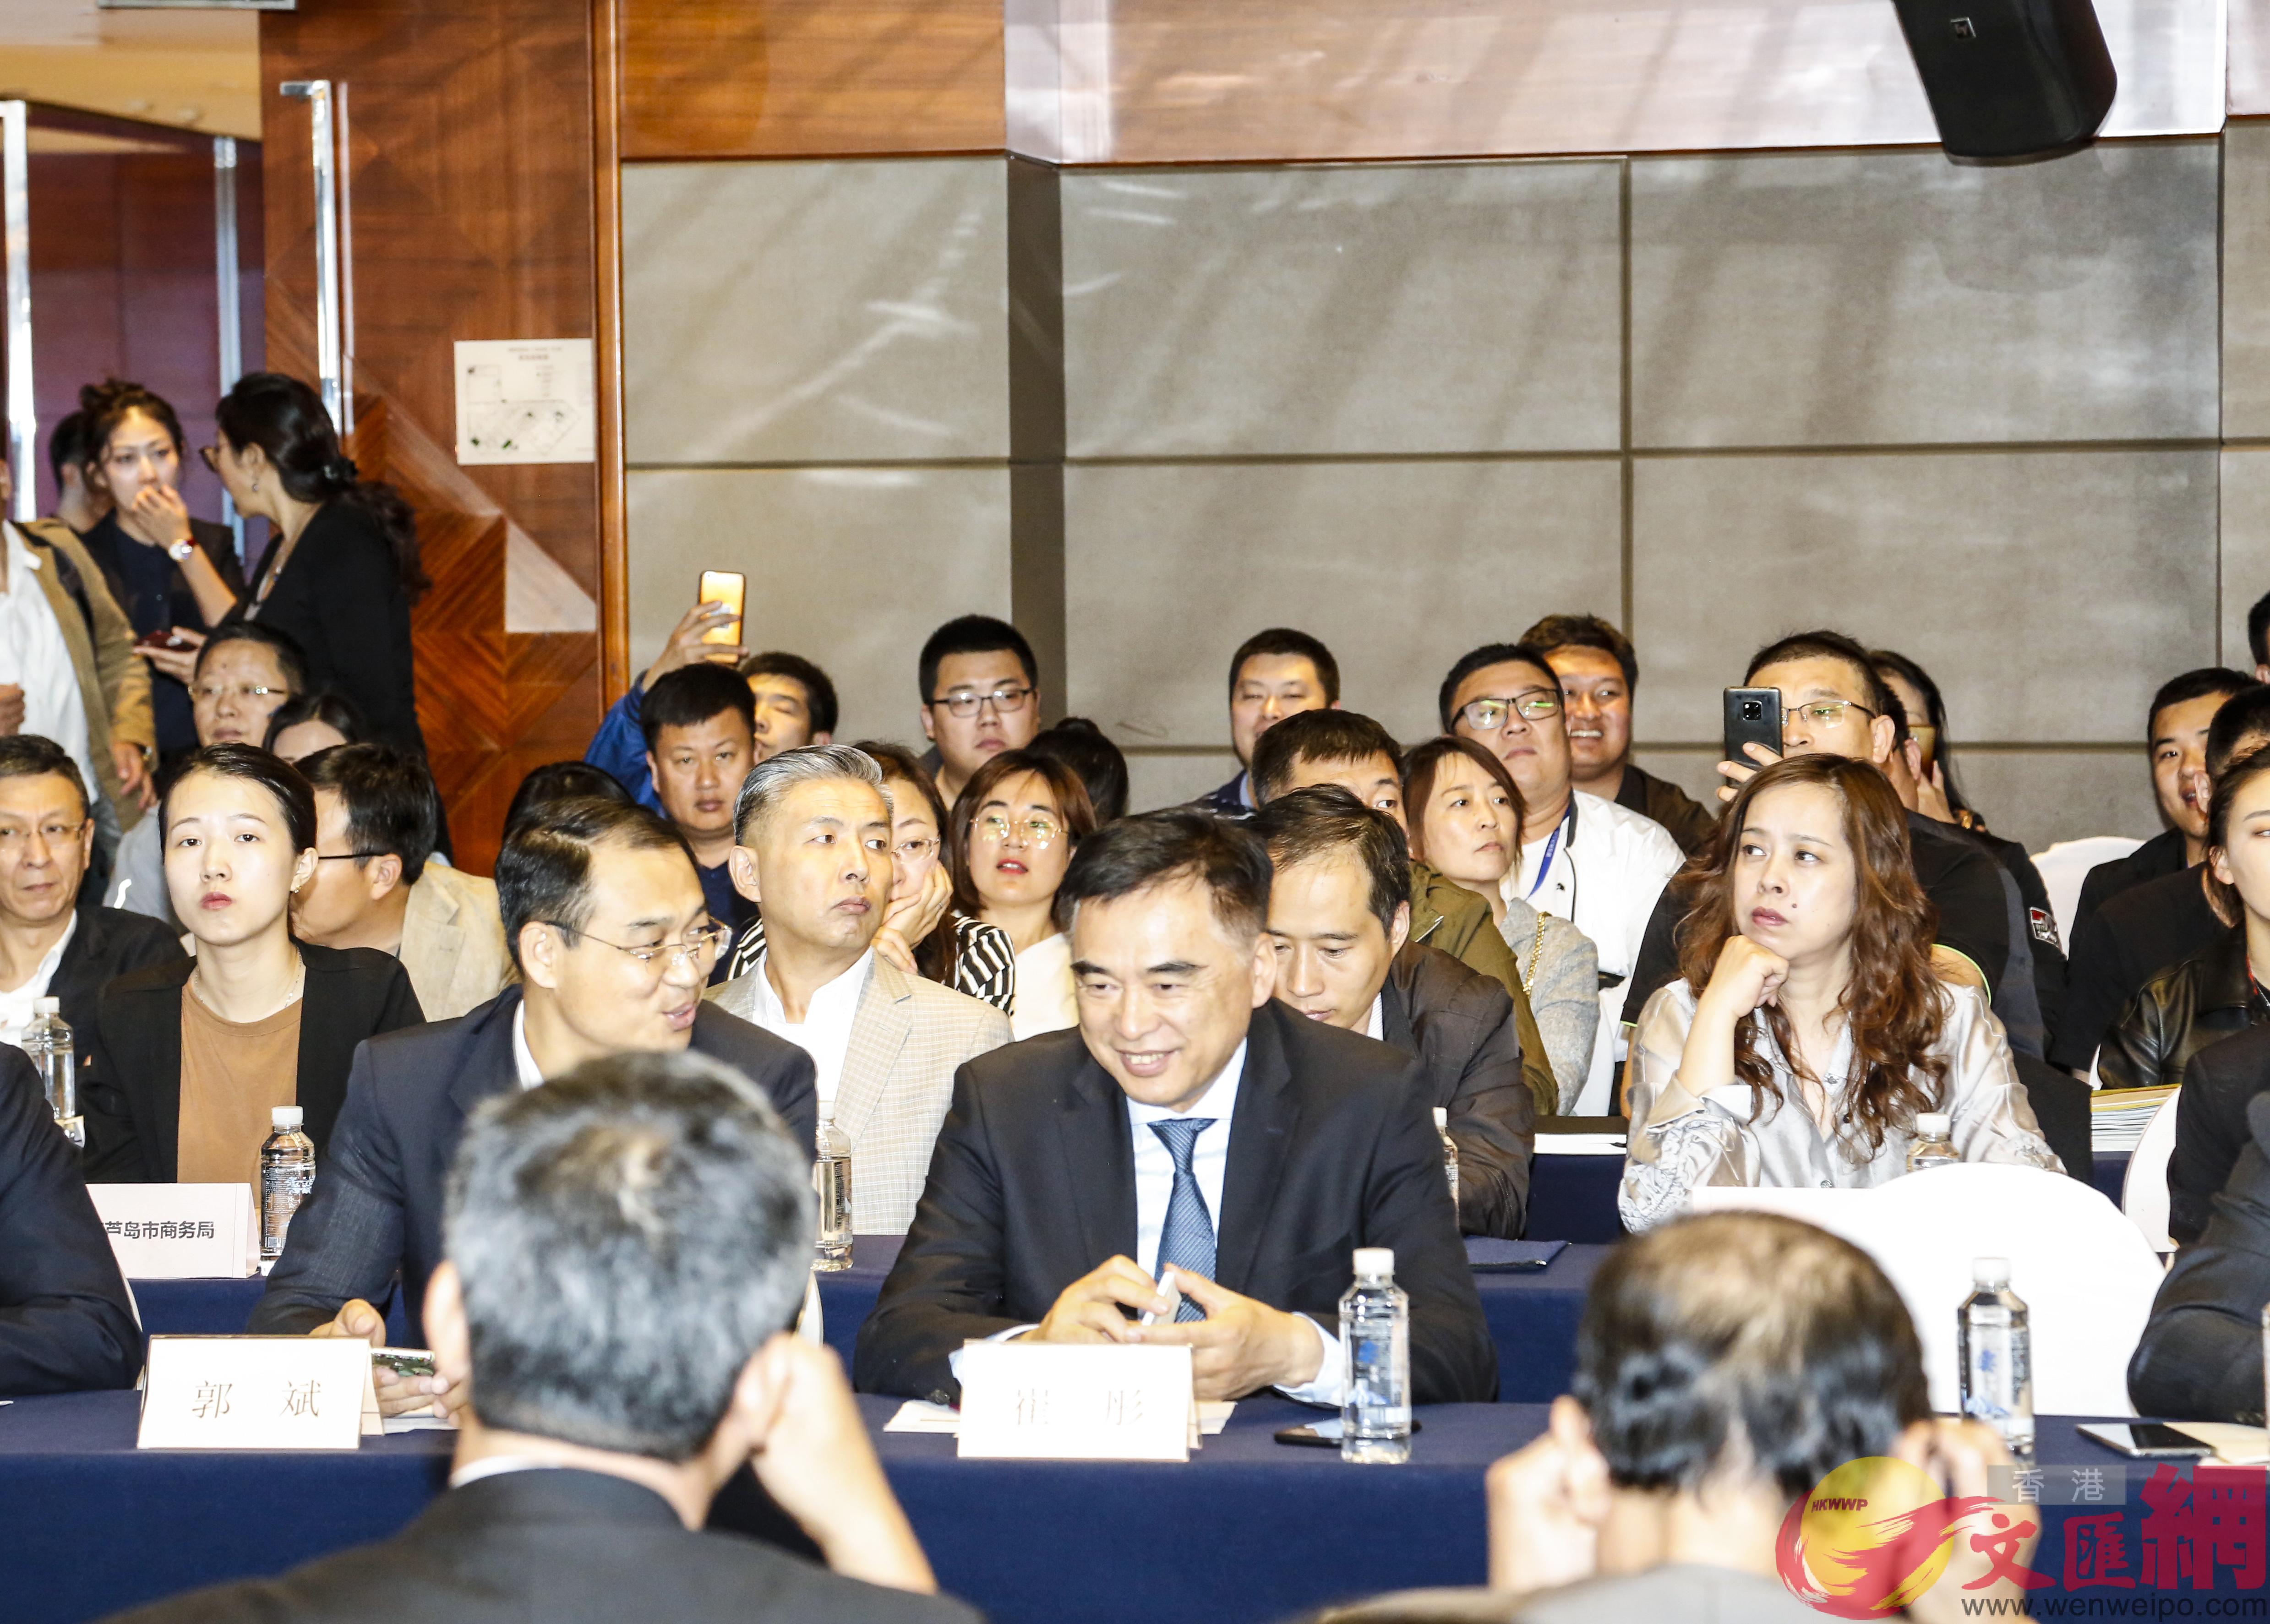 遼寧和越南政府相關部門以及企業代表200多人出席中國]遼寧^X越南農產品貿易促進座談會C]記者 於珈琳 攝^